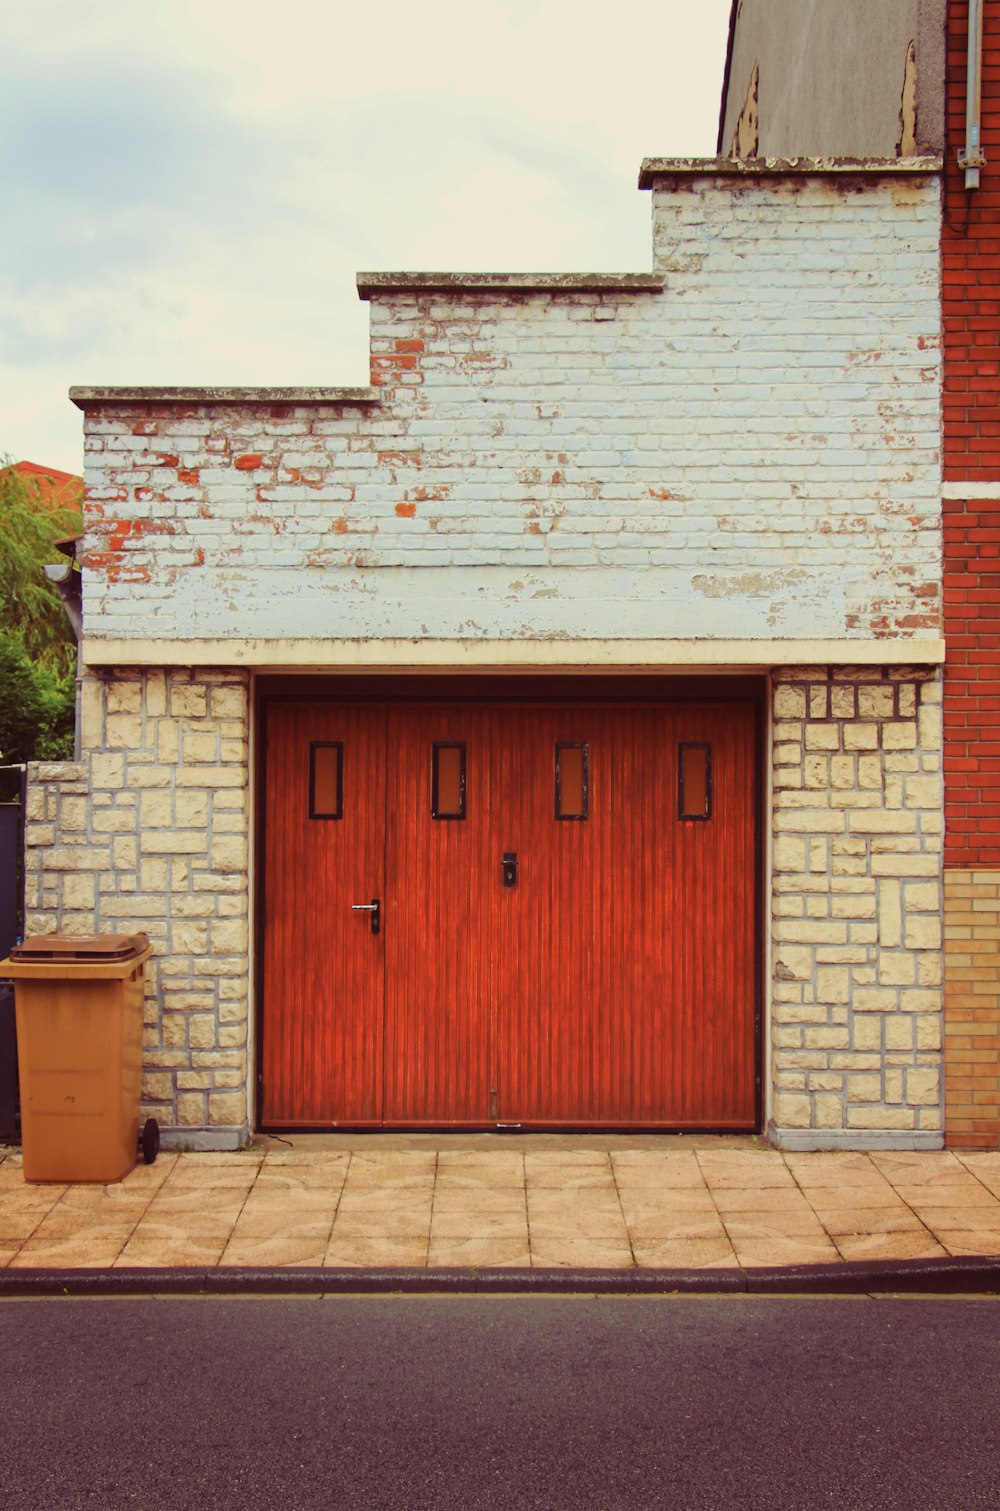 Un edificio de ladrillo con una puerta roja y un bote de basura